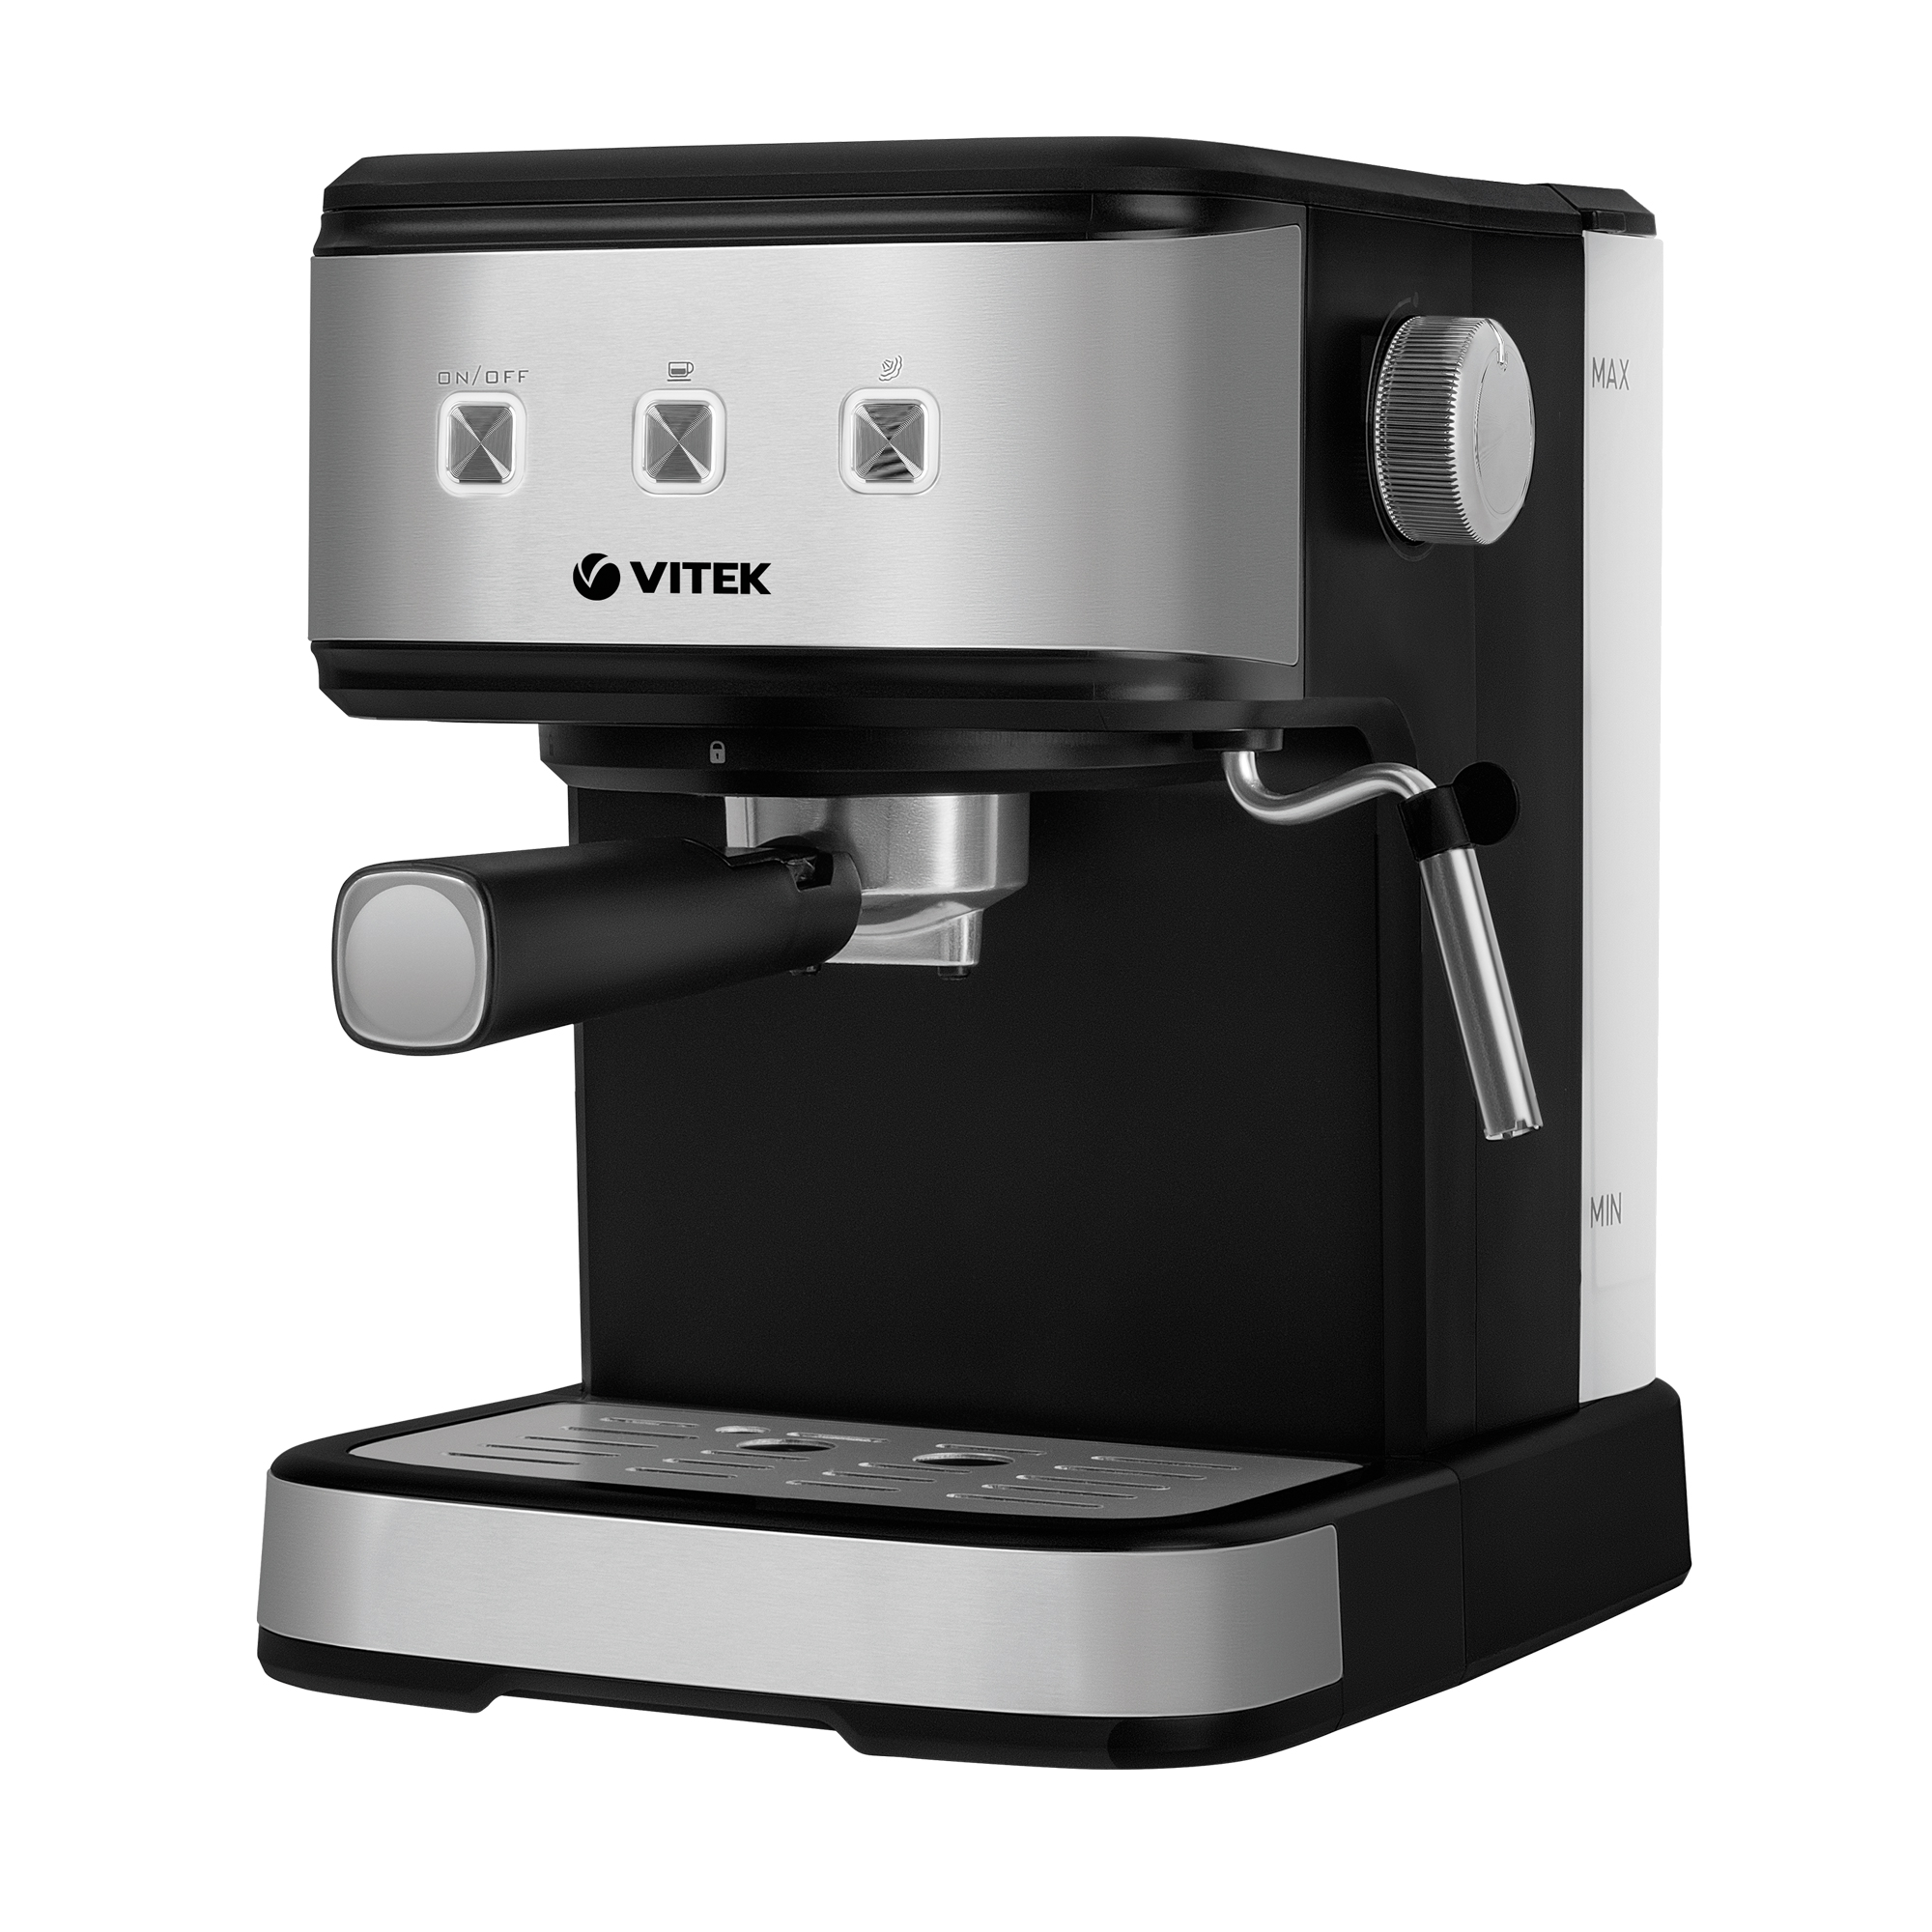 Рожковая кофеварка VITEK VT-8471 серый, черный рожковая кофеварка vitek vt 1524 gd gold